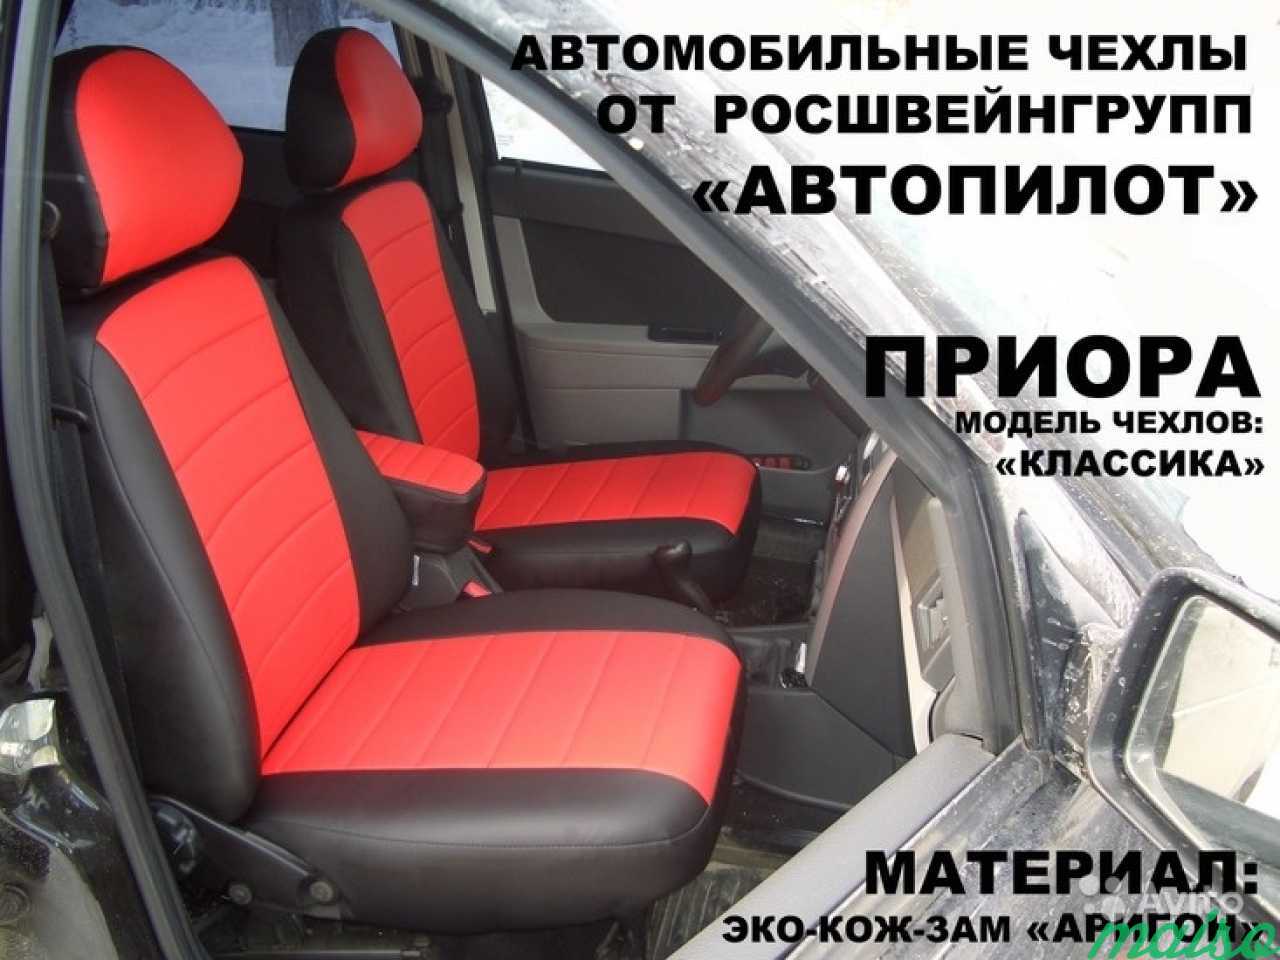 Купить Чехлы Для Автомобиля Нижний Новгород